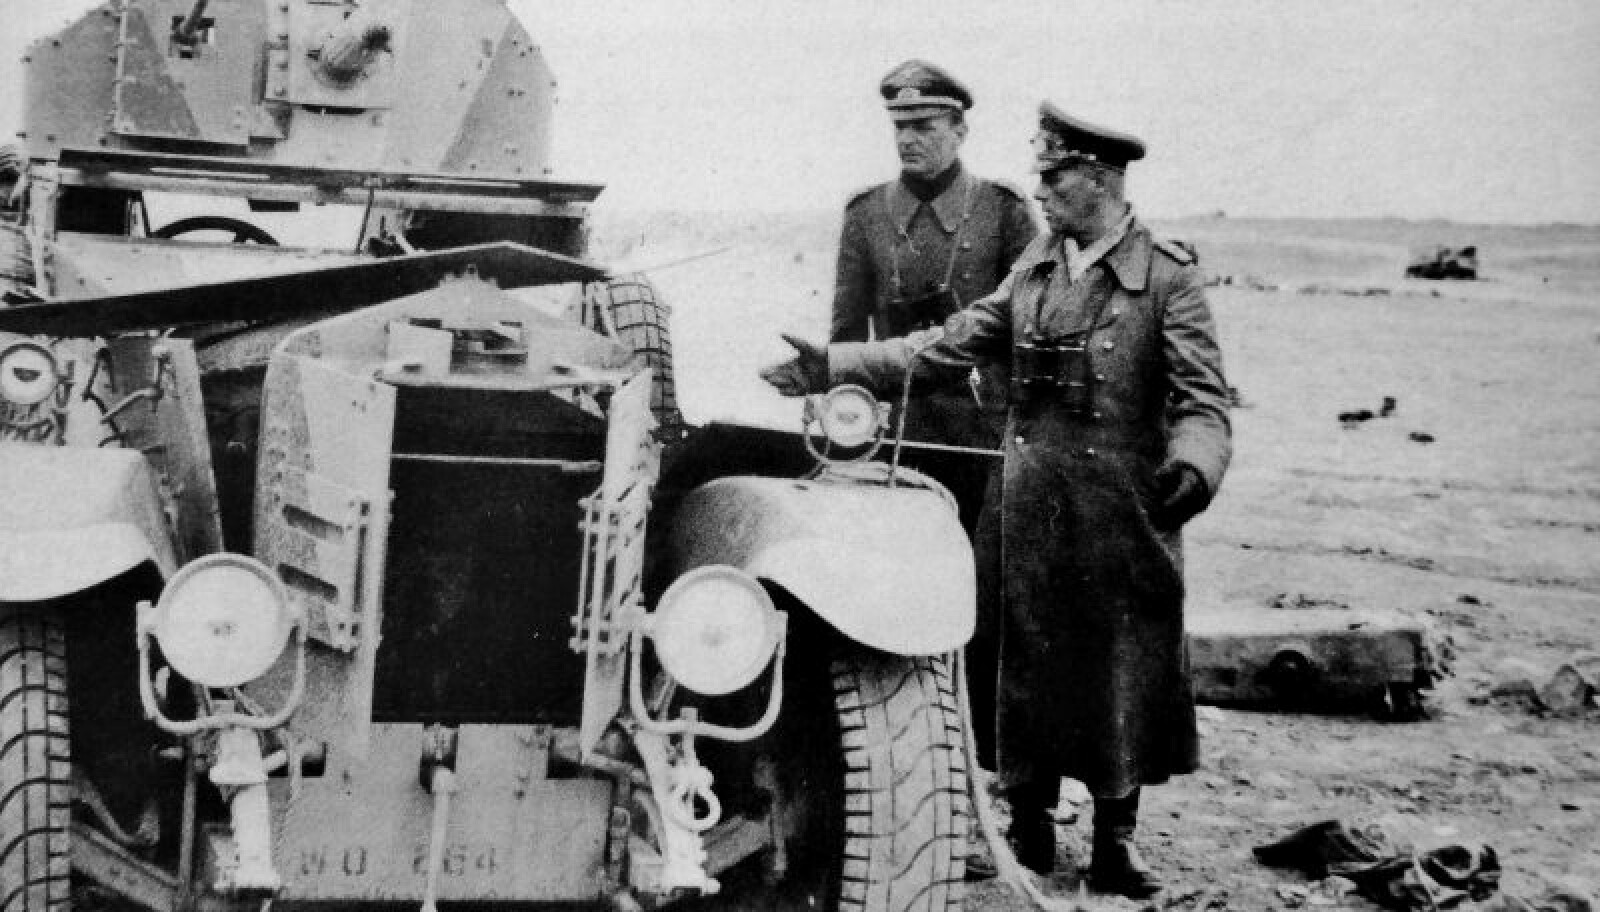 <b>PESSIMIST:</b> Tross suksess innså Rommel etter hvert at krigen var nødt til å tapes. Han uttrykte flere ganger en skepsis til den tyske krigsinnsatsen, og ønsket fredssamtaler med de allierte.